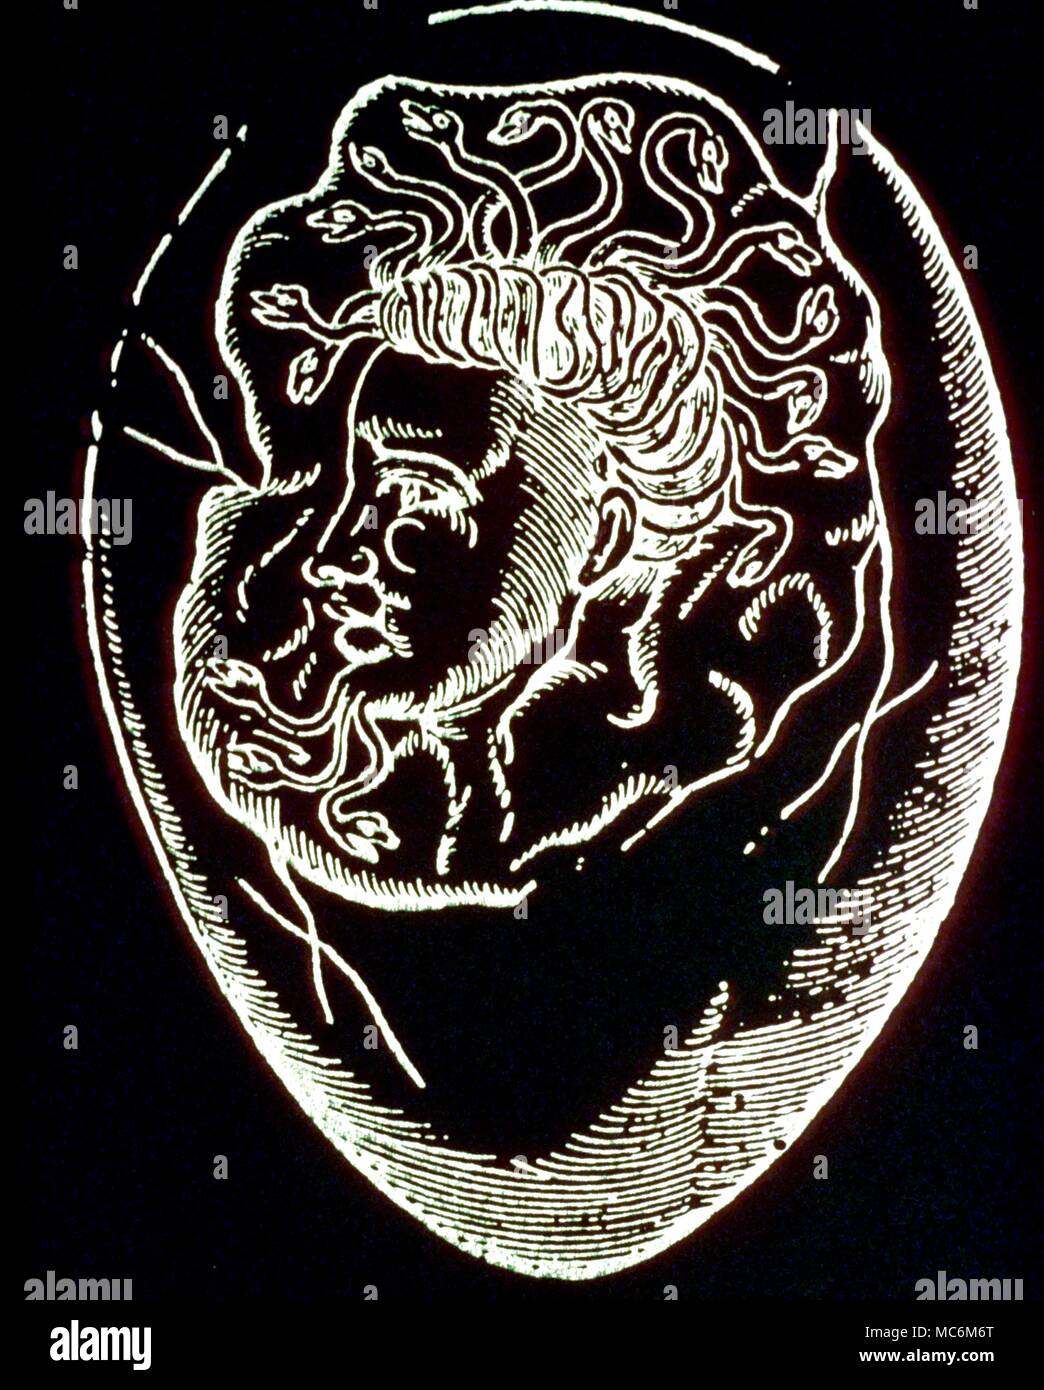 Mostri - Testa in uovo. Strano monster - testa umana con capelli a serpentina - Trovato in uovo e registrati nel 1579 edizione di Ambroise Pare 'De Monstris ac Monstruosis'. Foto Stock